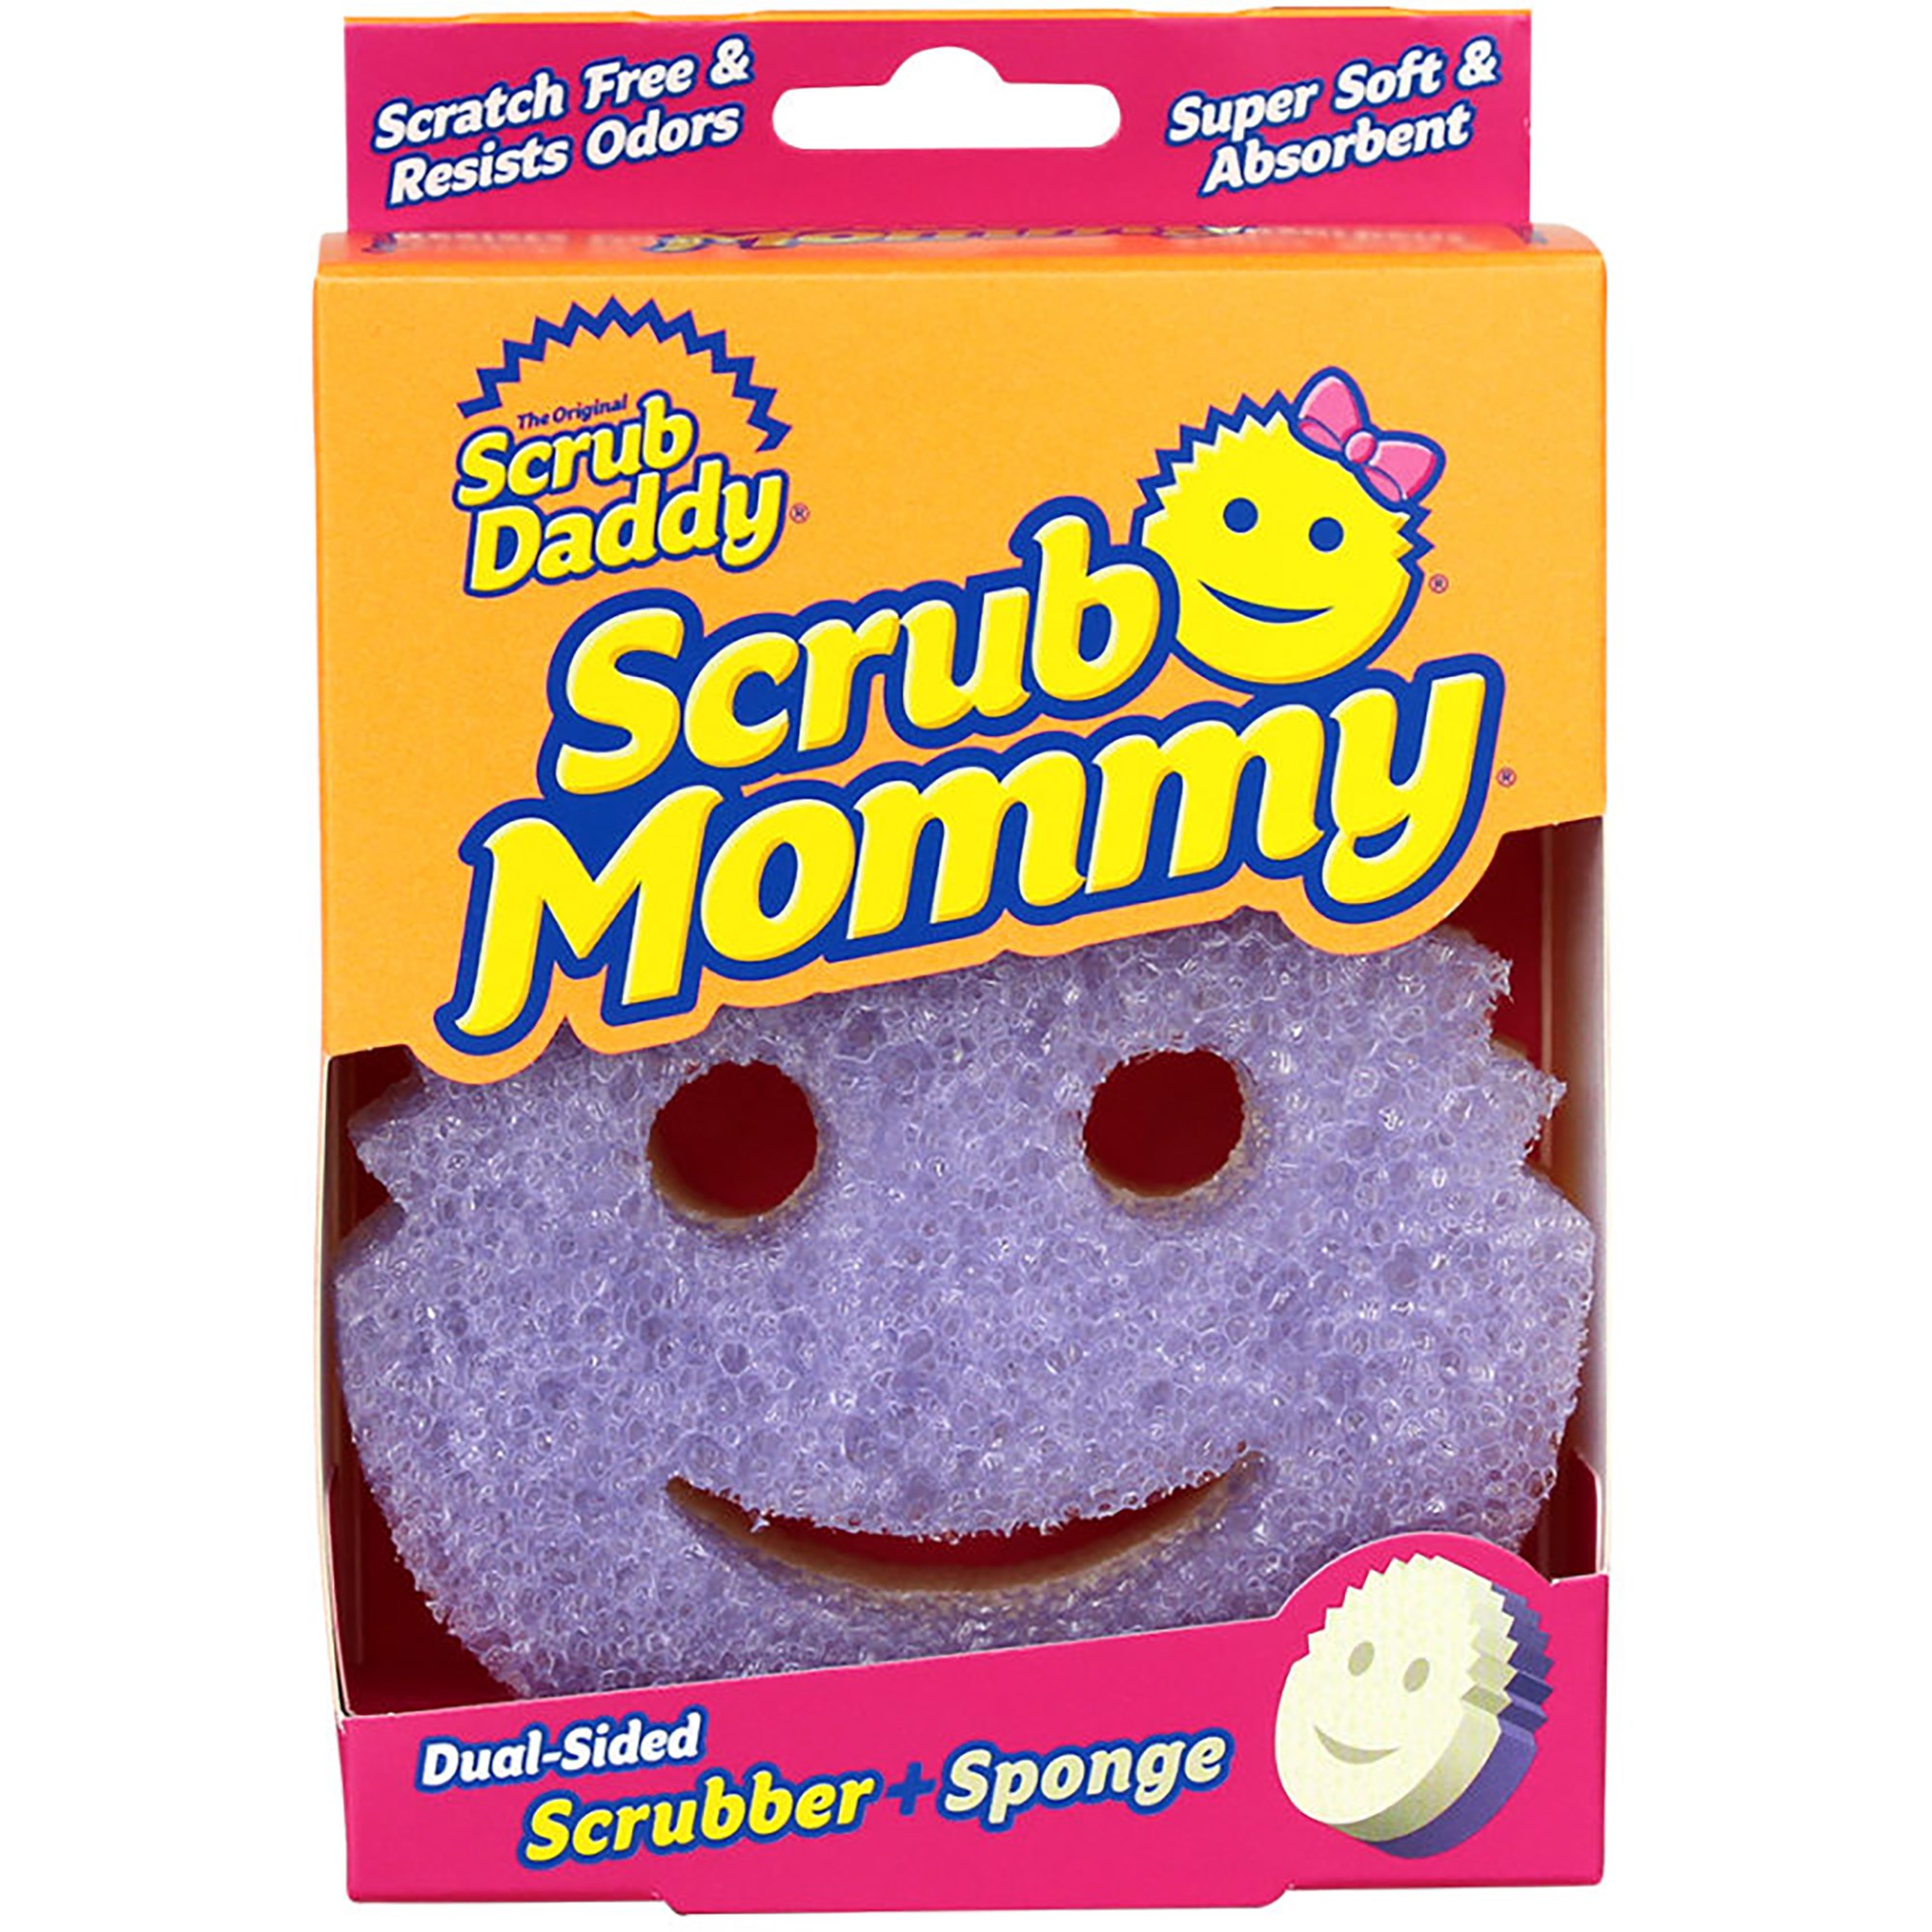 Scrub Daddy Scrub Mommy Violet